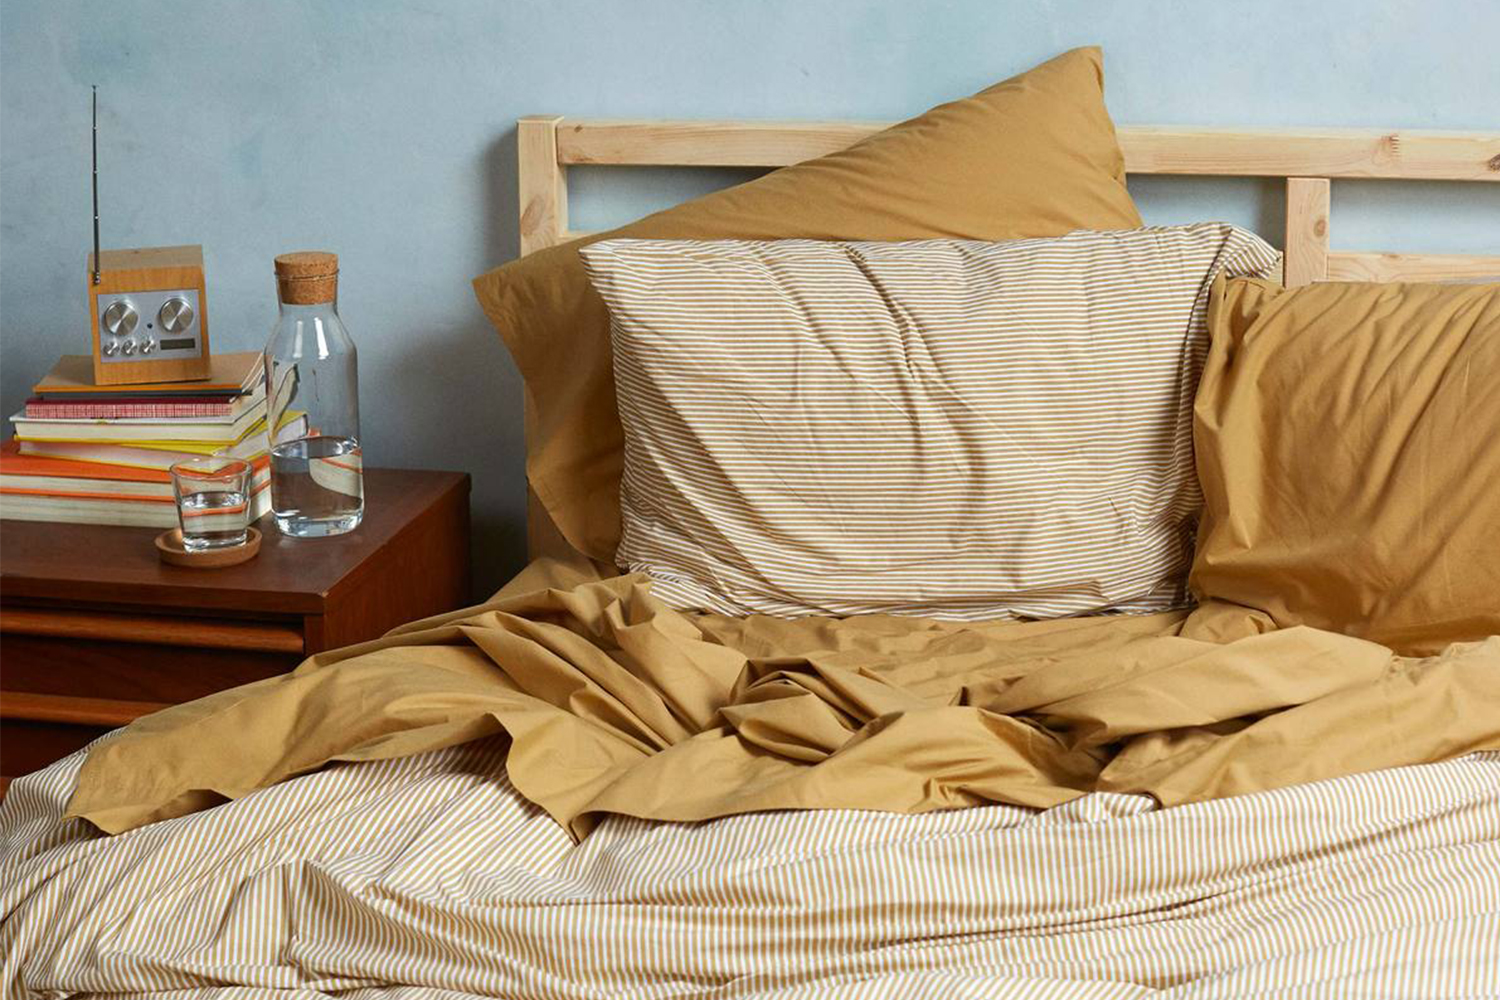 brooklinen sheets up to 20 inch mattress